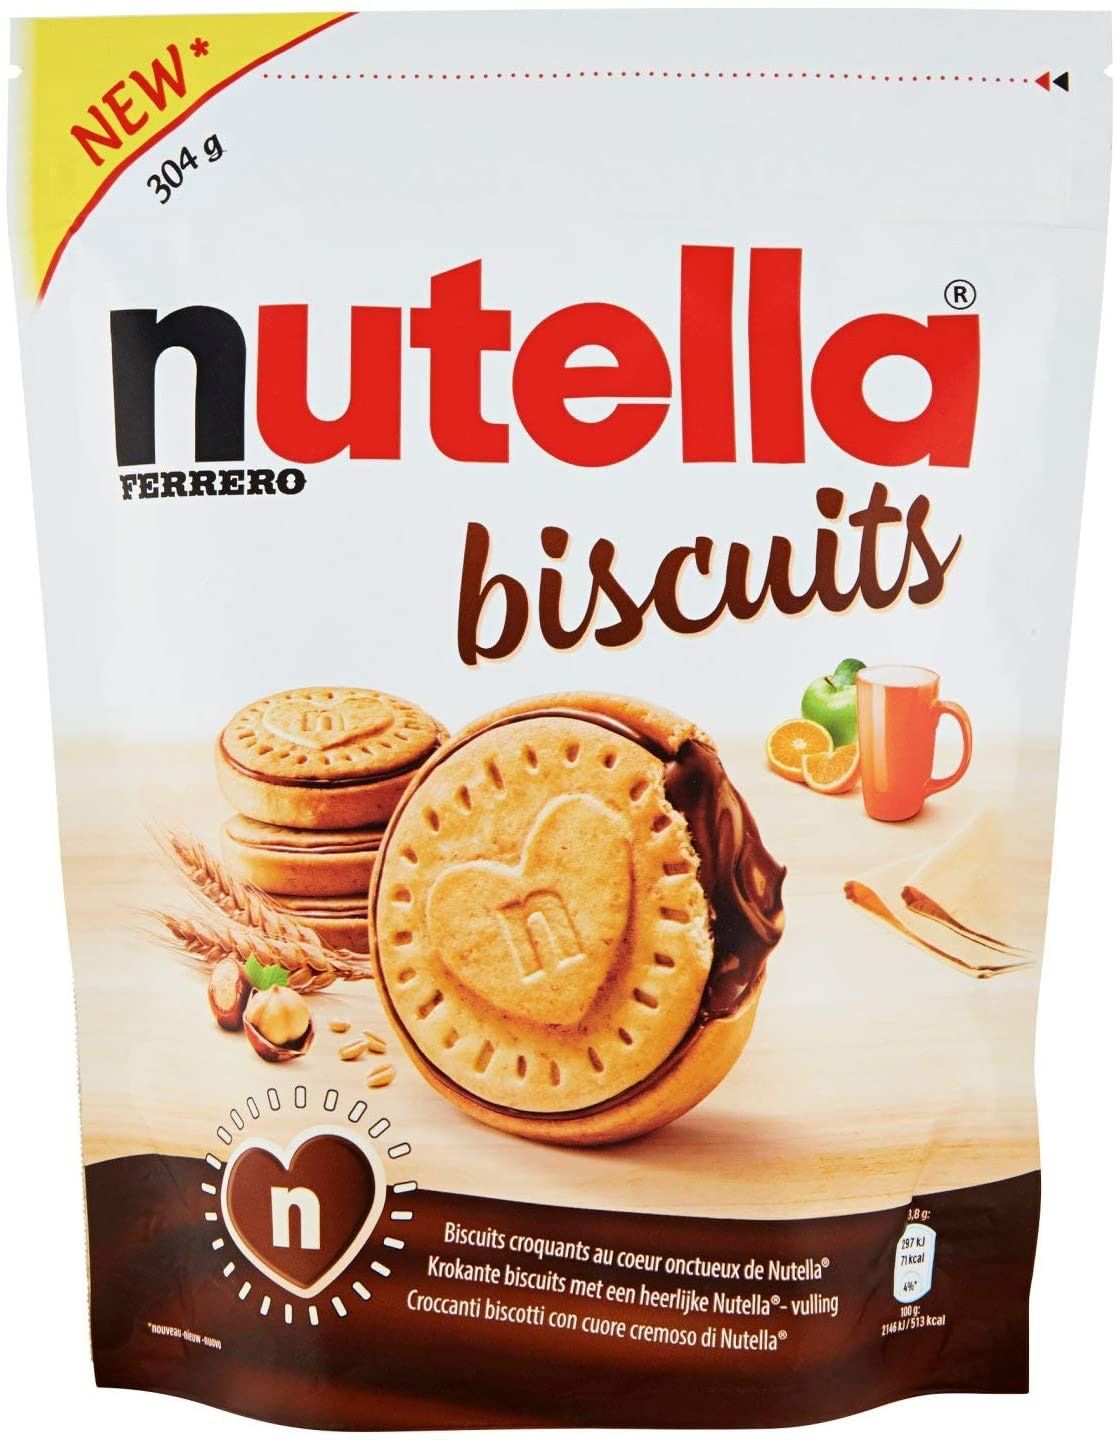 Спрете всичко, бисквити Nutella вече съществуват